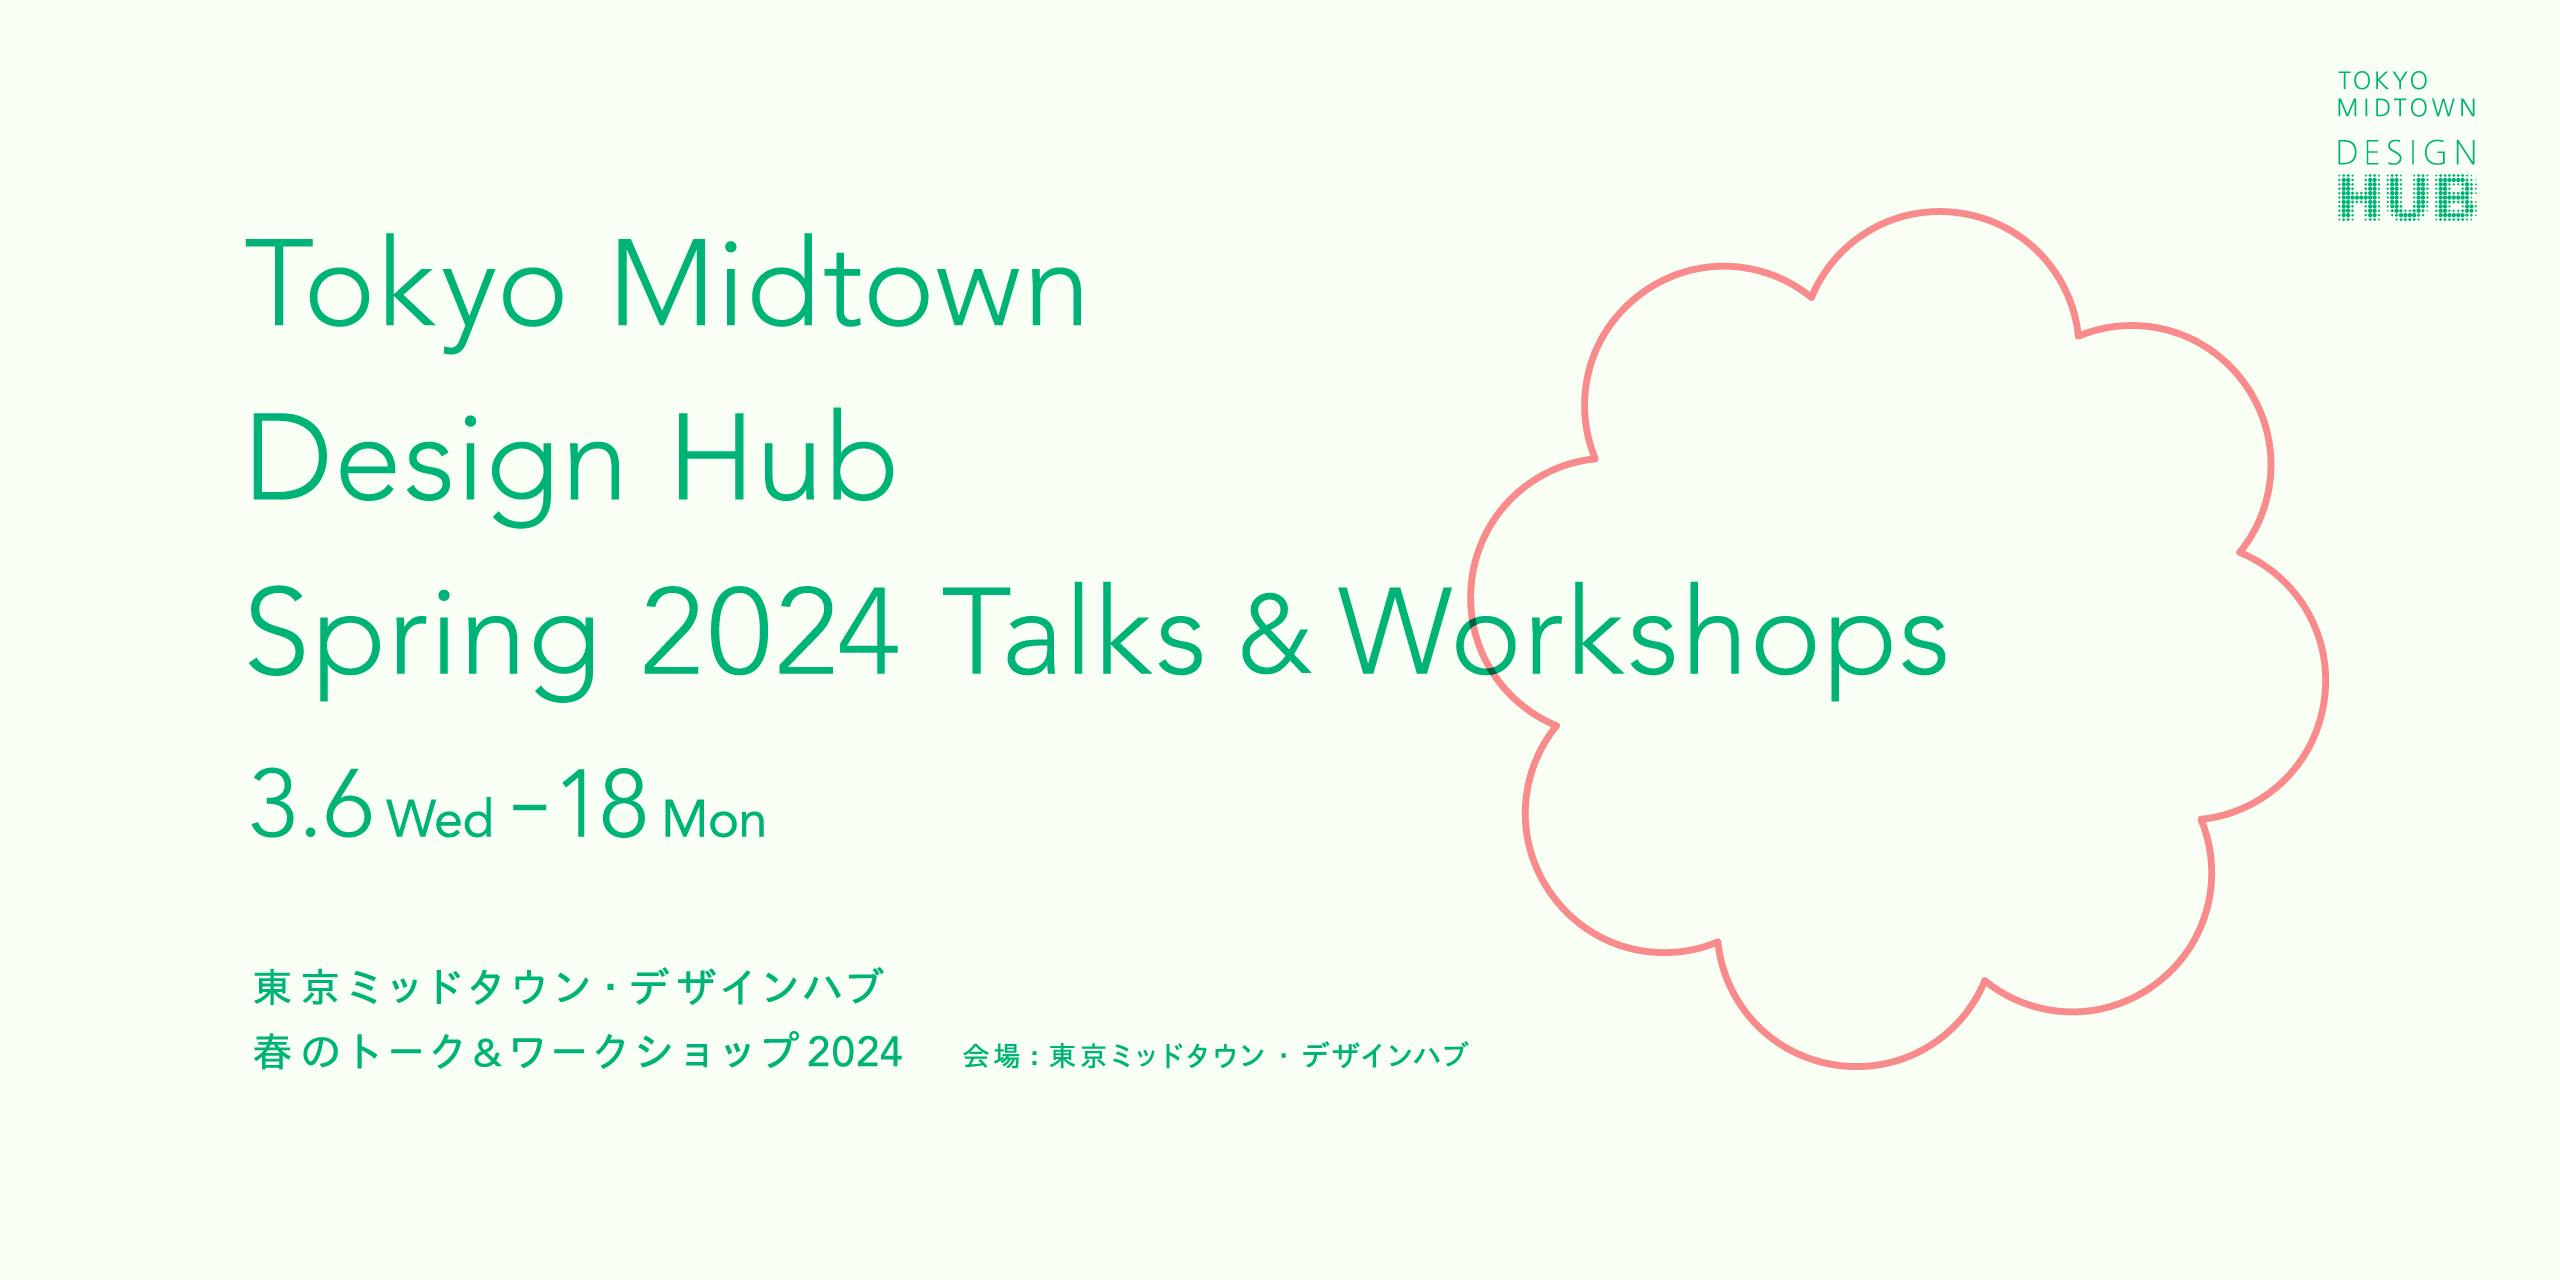 Spring 2024 Talks & Workshops